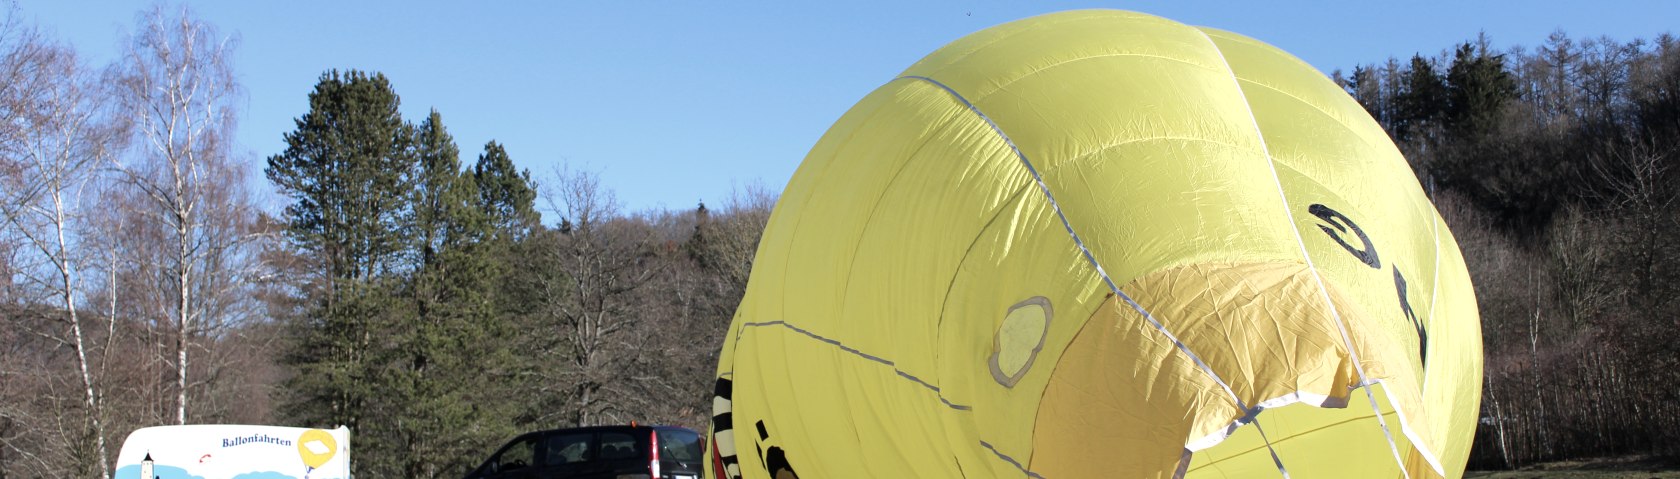 Aufrüstung des Warsteiner-Heißluftballons im Rurseezentrum Rurberg, © Rursee-Touristik / C. Freuen